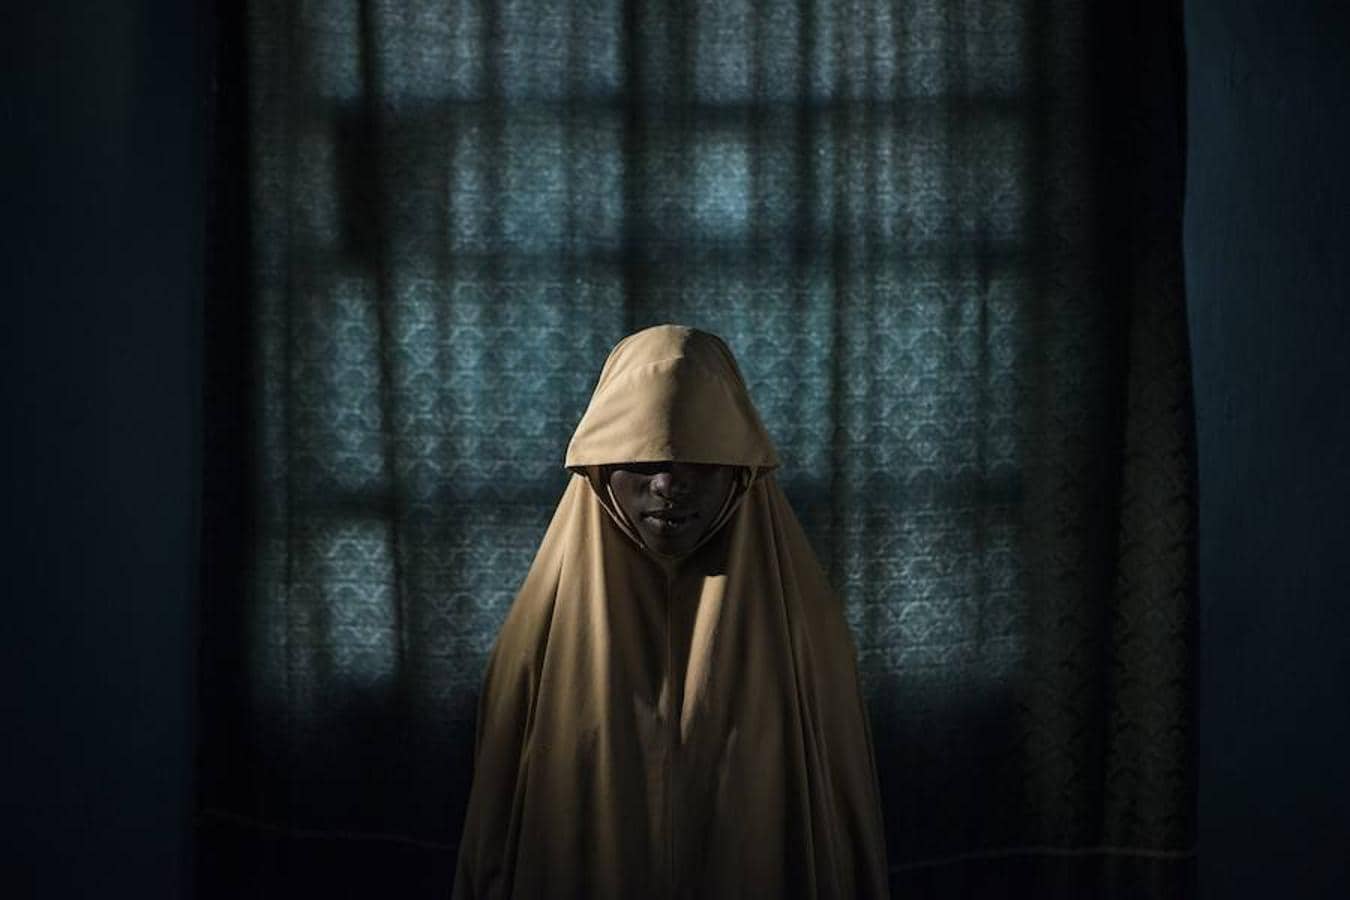 La obra del fotógrafo australiano Adam Ferguson para el New York Times tomada el 21 de septiembre de 2017 que muestra a la joven Aisha, de 14 años, en Maiduguri en el estado de Borno (Nigeria). Aisha fue secuestrada por Boko Haram y obligada a inmolarse en una misión suicida. Tras ser atada con cinturones explosivos, Aisha consiguió ayuda y logró evitar su muerte y una catástrofe. 